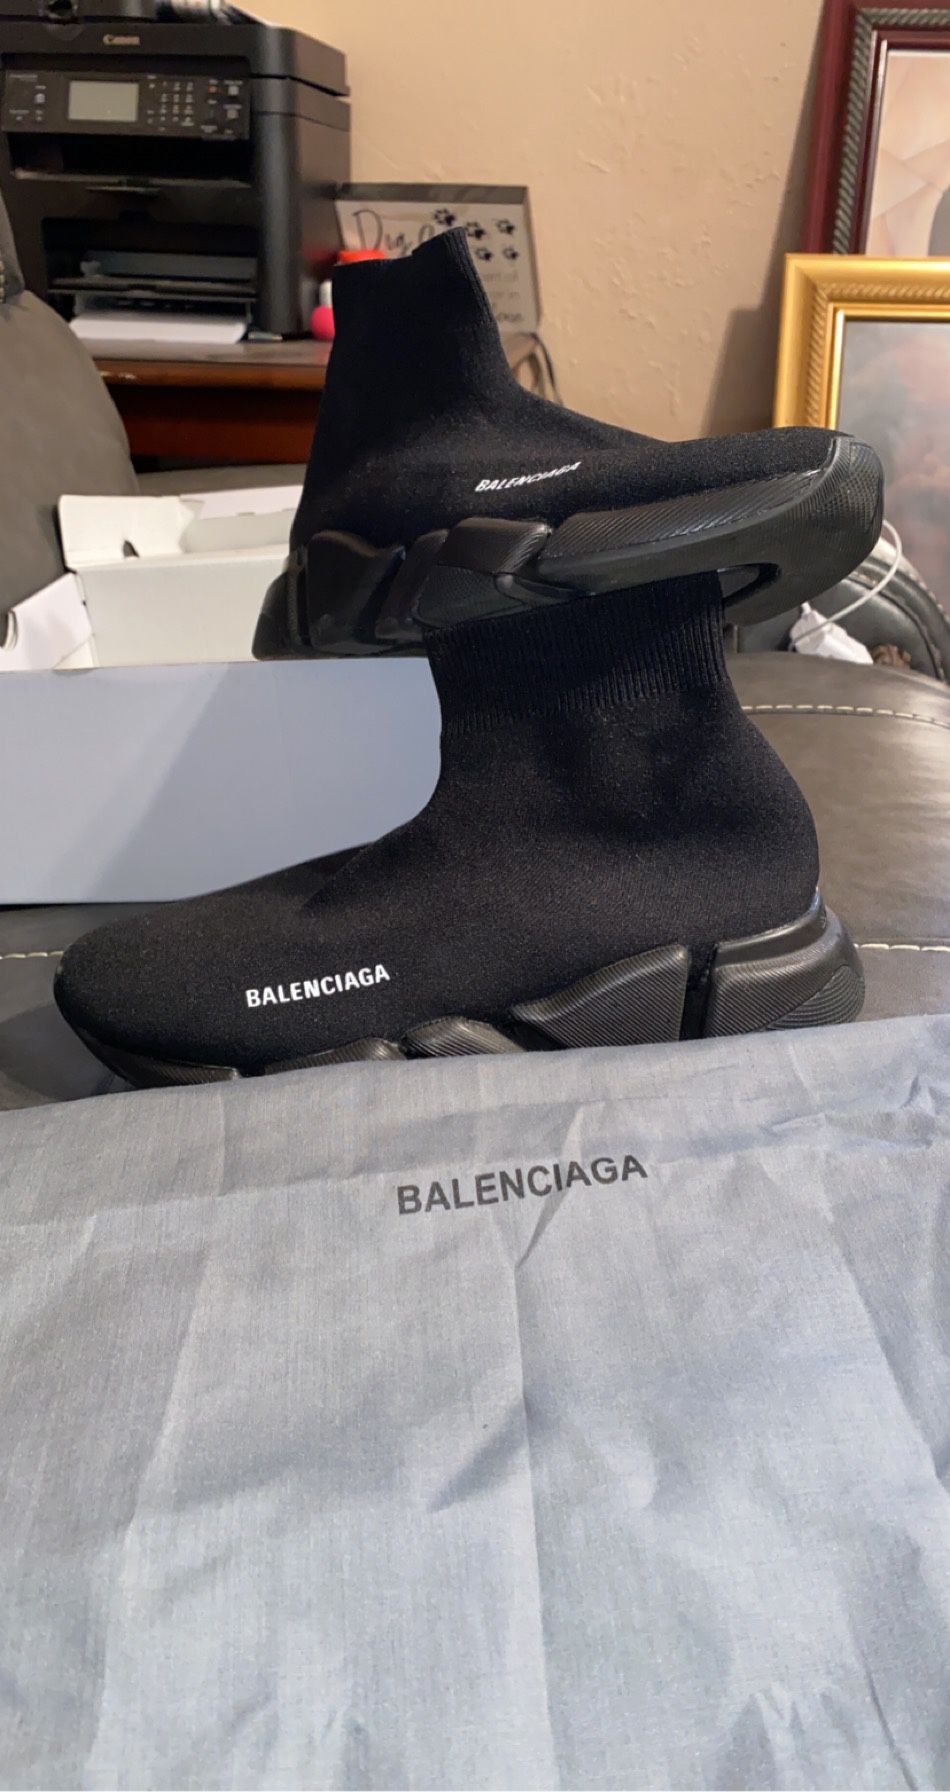 Balenciaga’s shoes